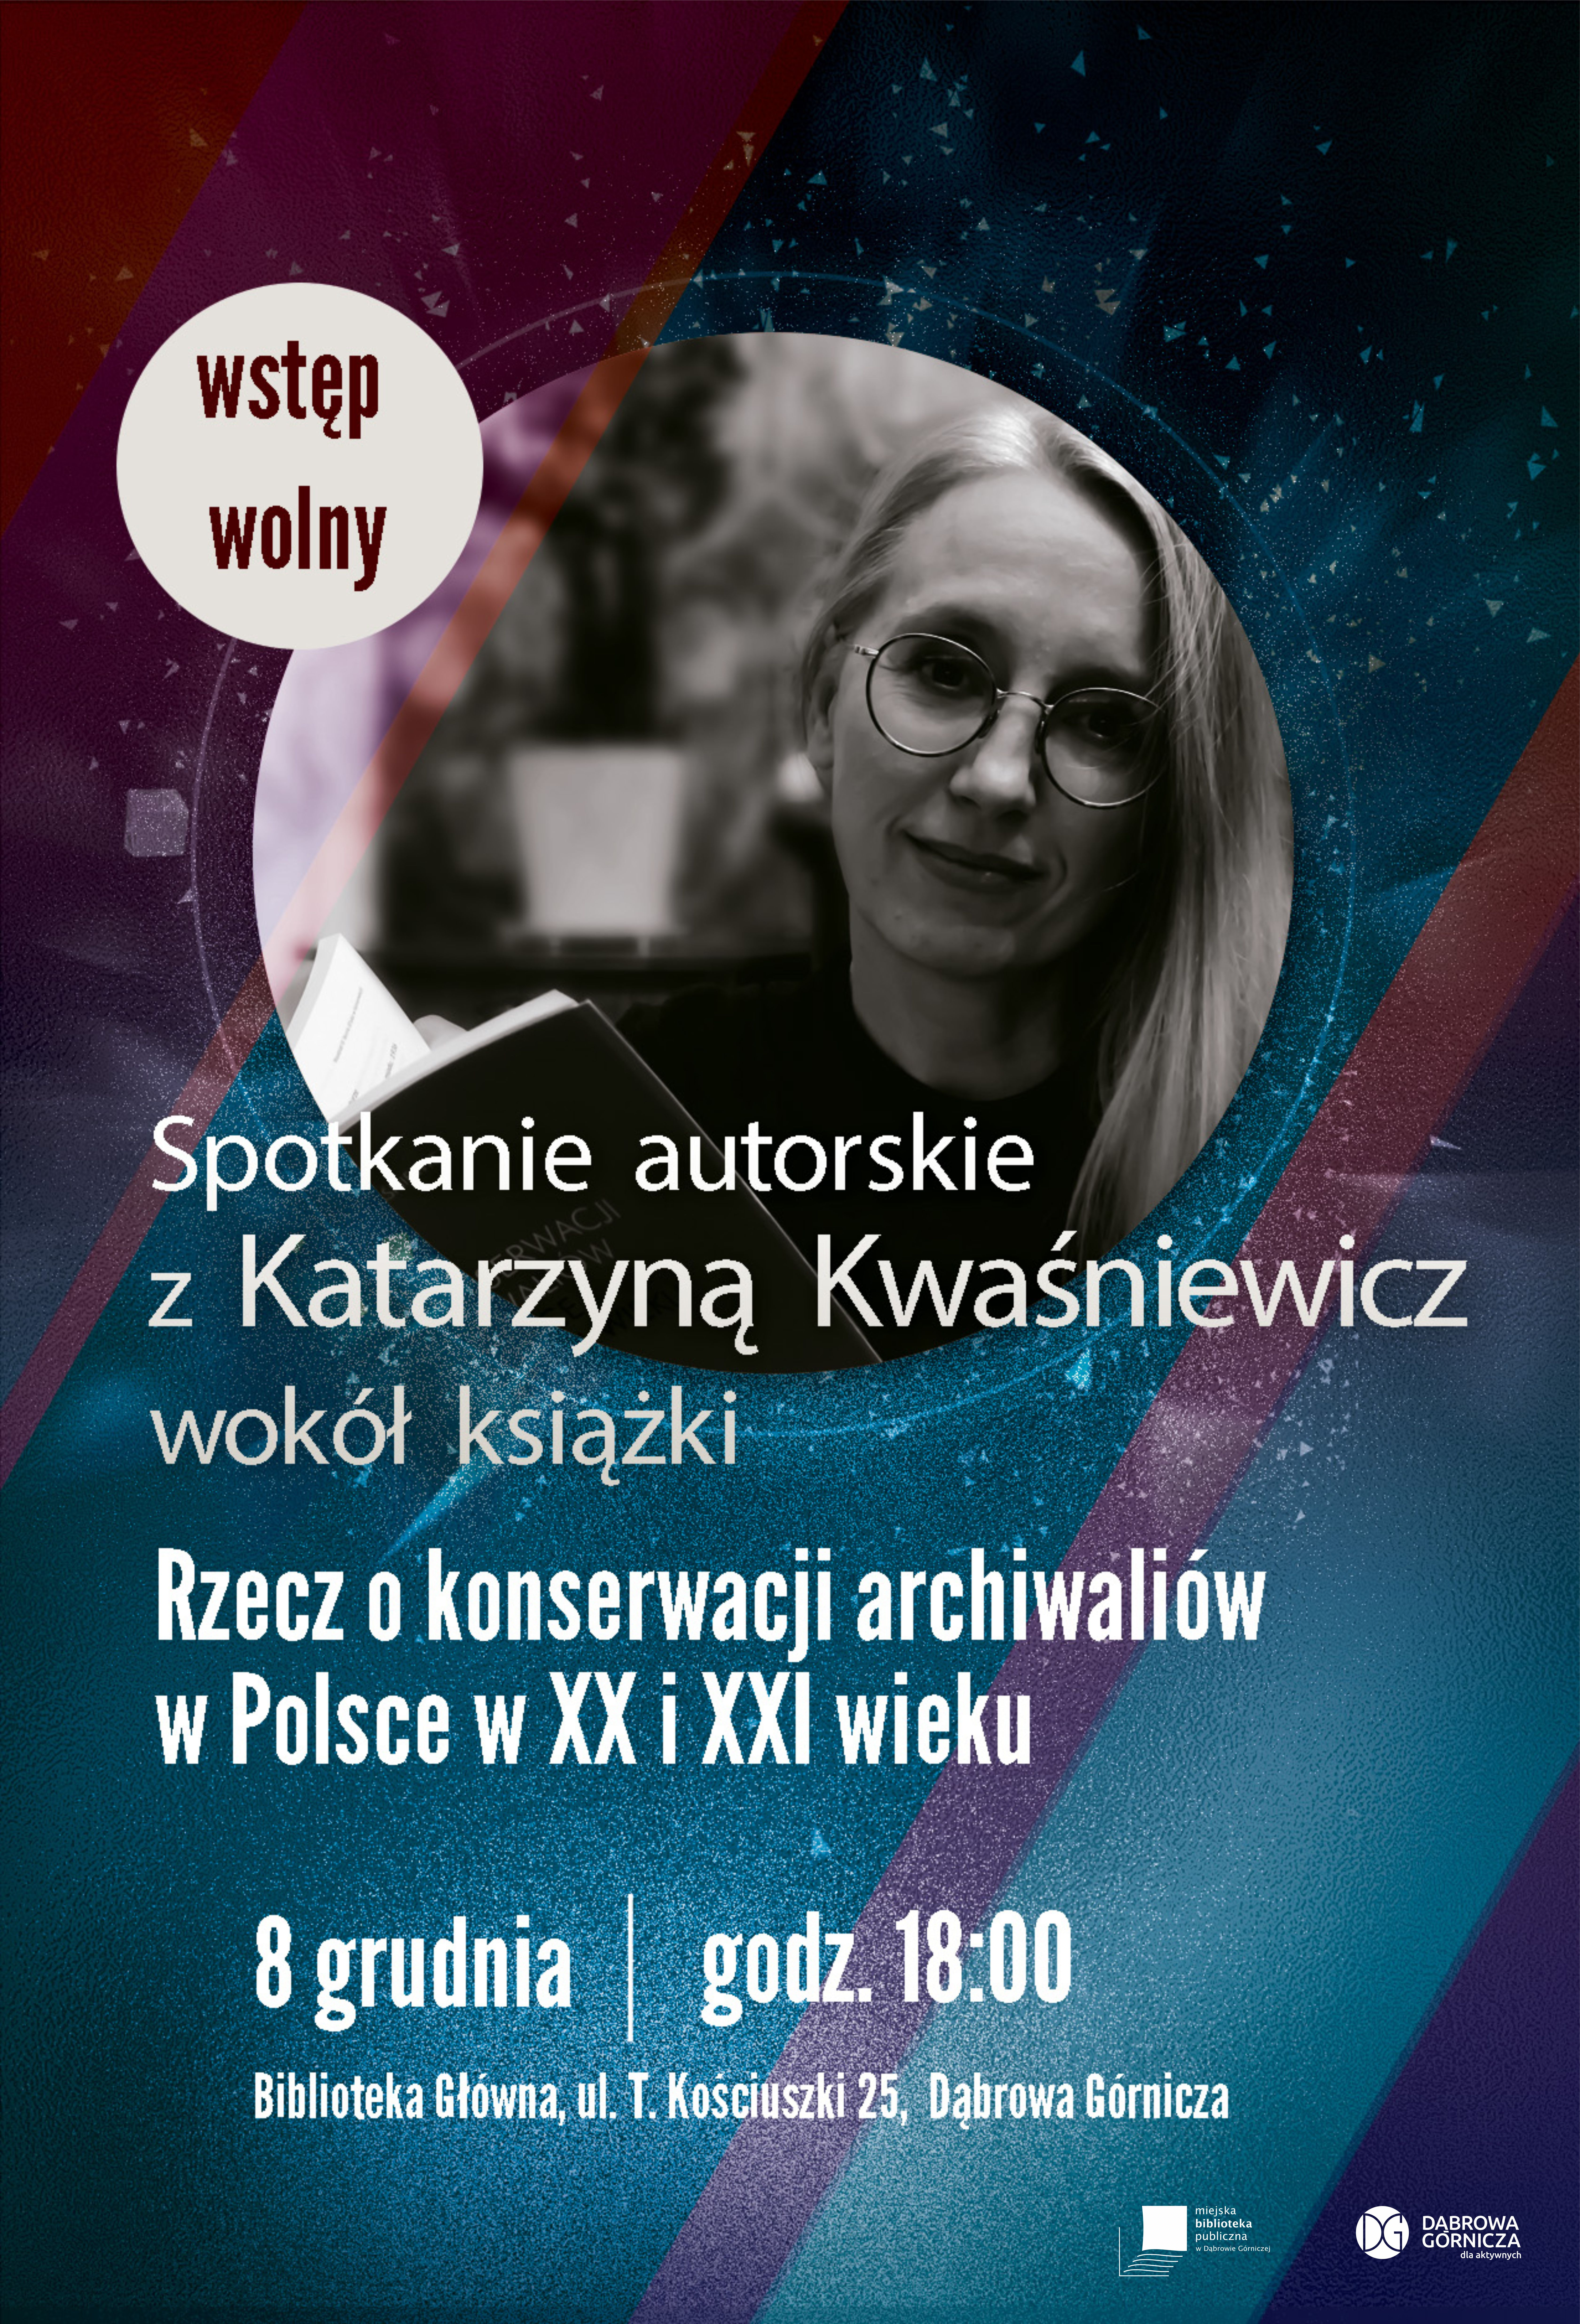 Spotkanie z Katarzyną Kwaśniewicz wokół książki “Rzecz o konserwacji archiwaliów w Polsce w XX i XXI wieku”